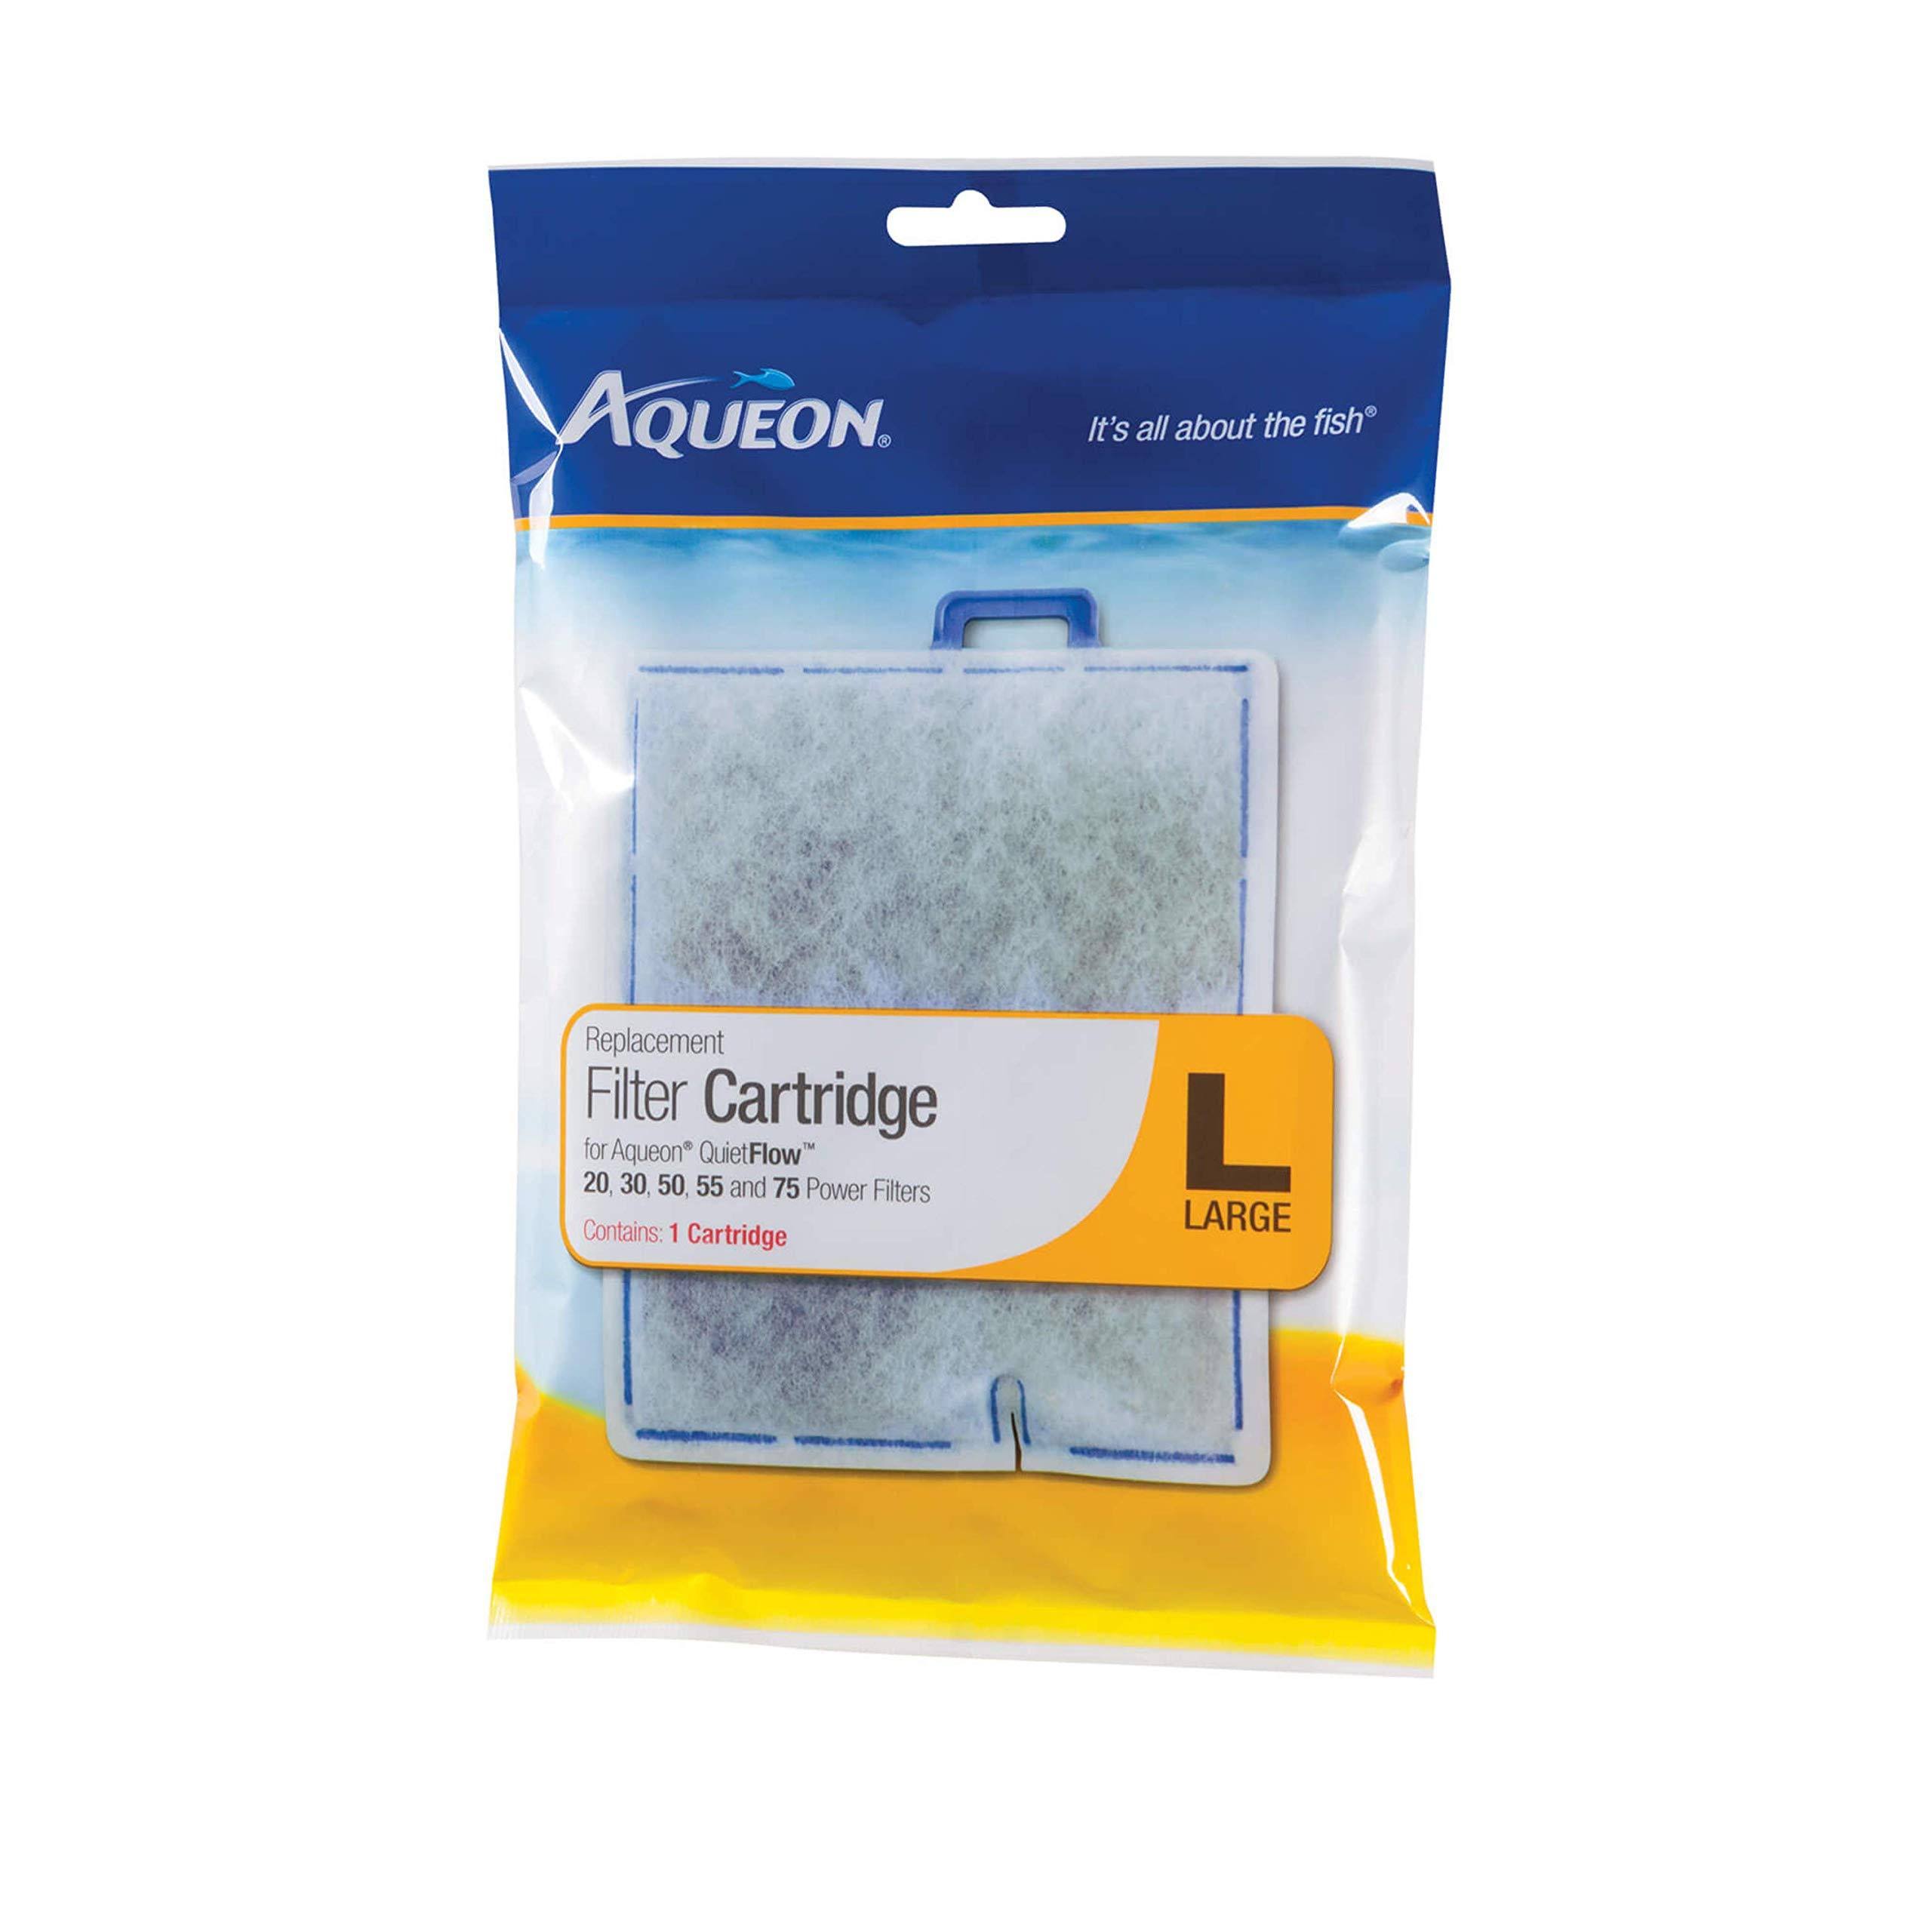 Aqueon Replacement Filter Cartridge - Large, 1pk